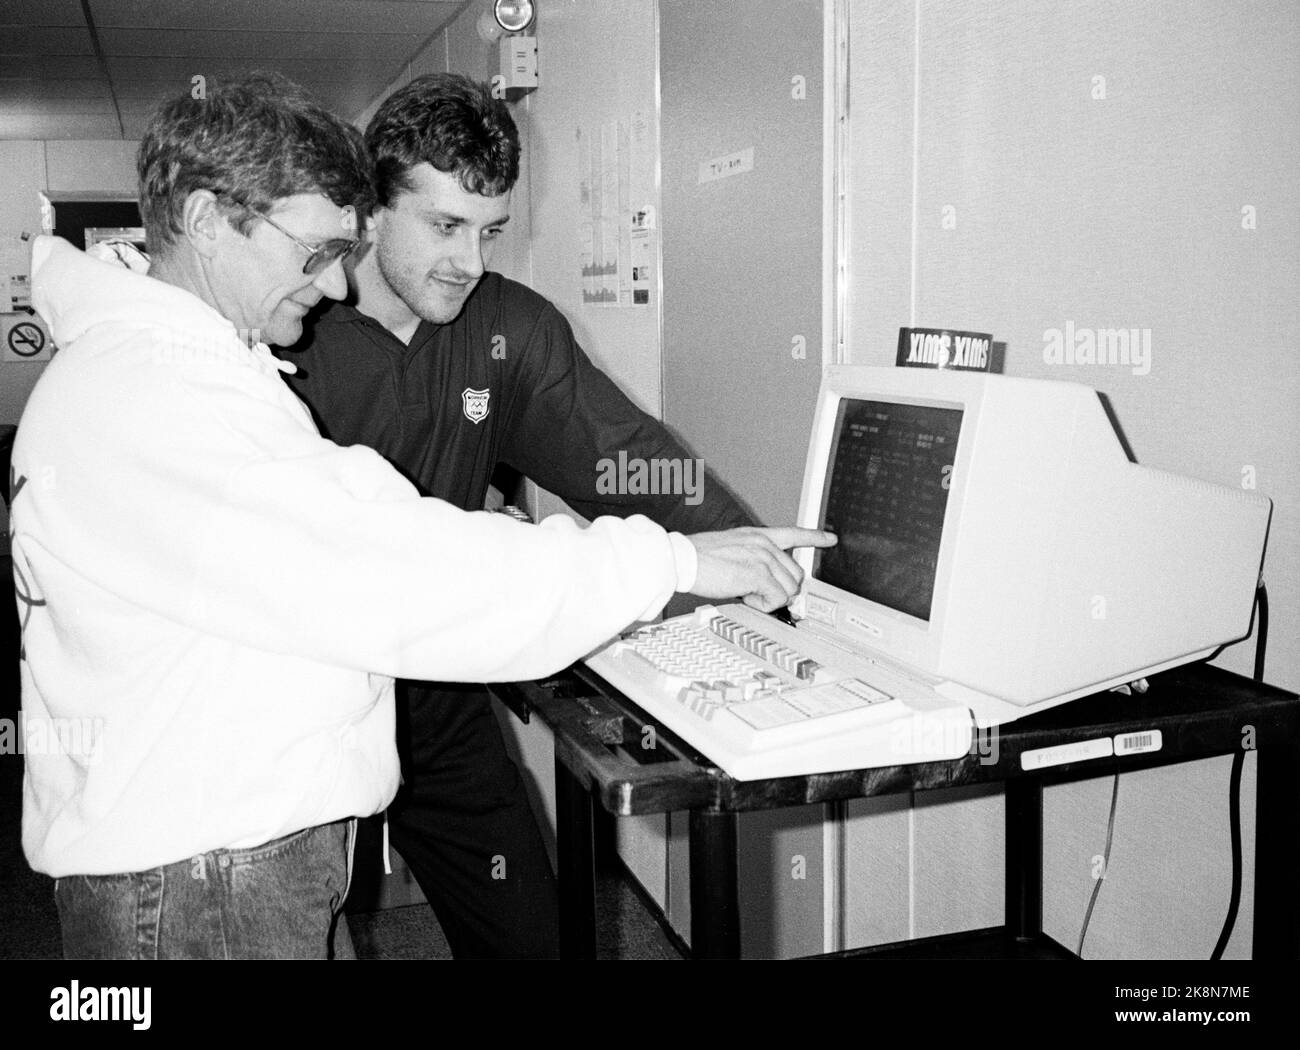 Calgary, Kanada 198802: Olympic Calgary 1988. Nationalmannschaftstrainer Åke Jønsson und Terje Langli studieren die Wettervorhersage am Computer in der olympischen Stadt Canmore. Foto: Bjørn Sigurdsøn Stockfoto